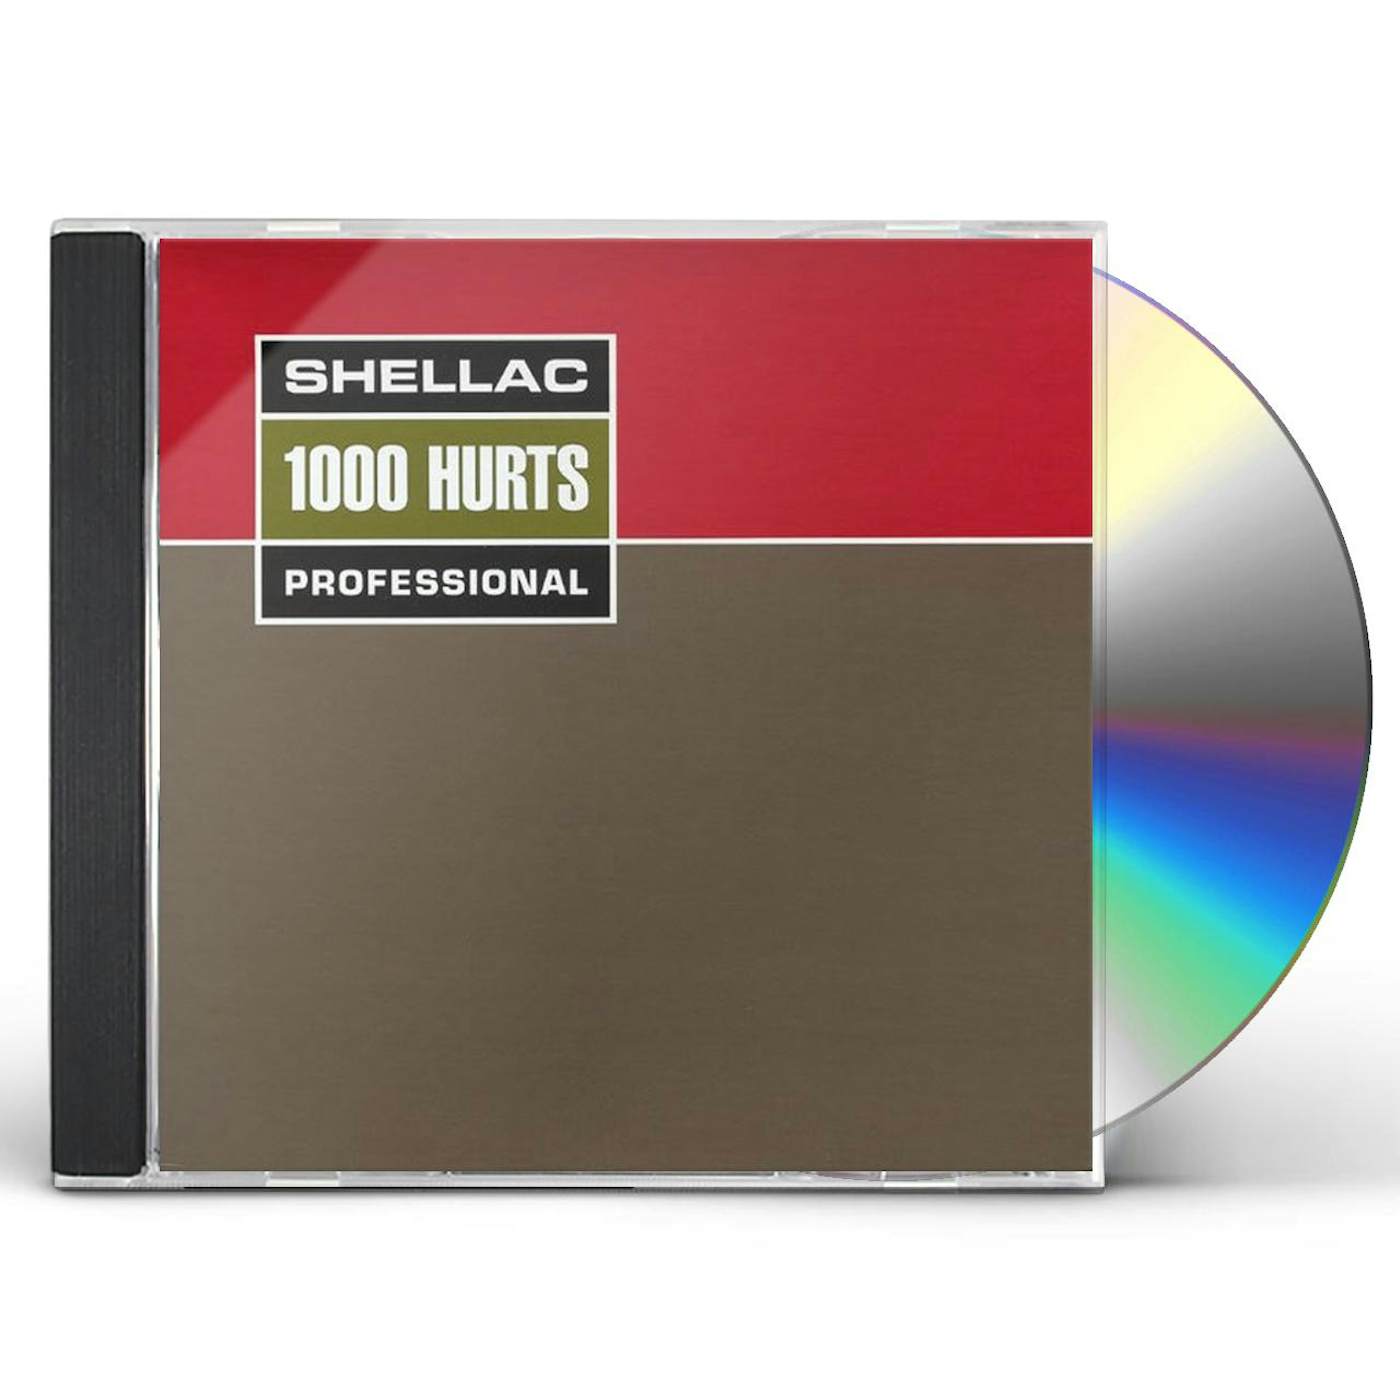 Shellac 1000 HURTS CD